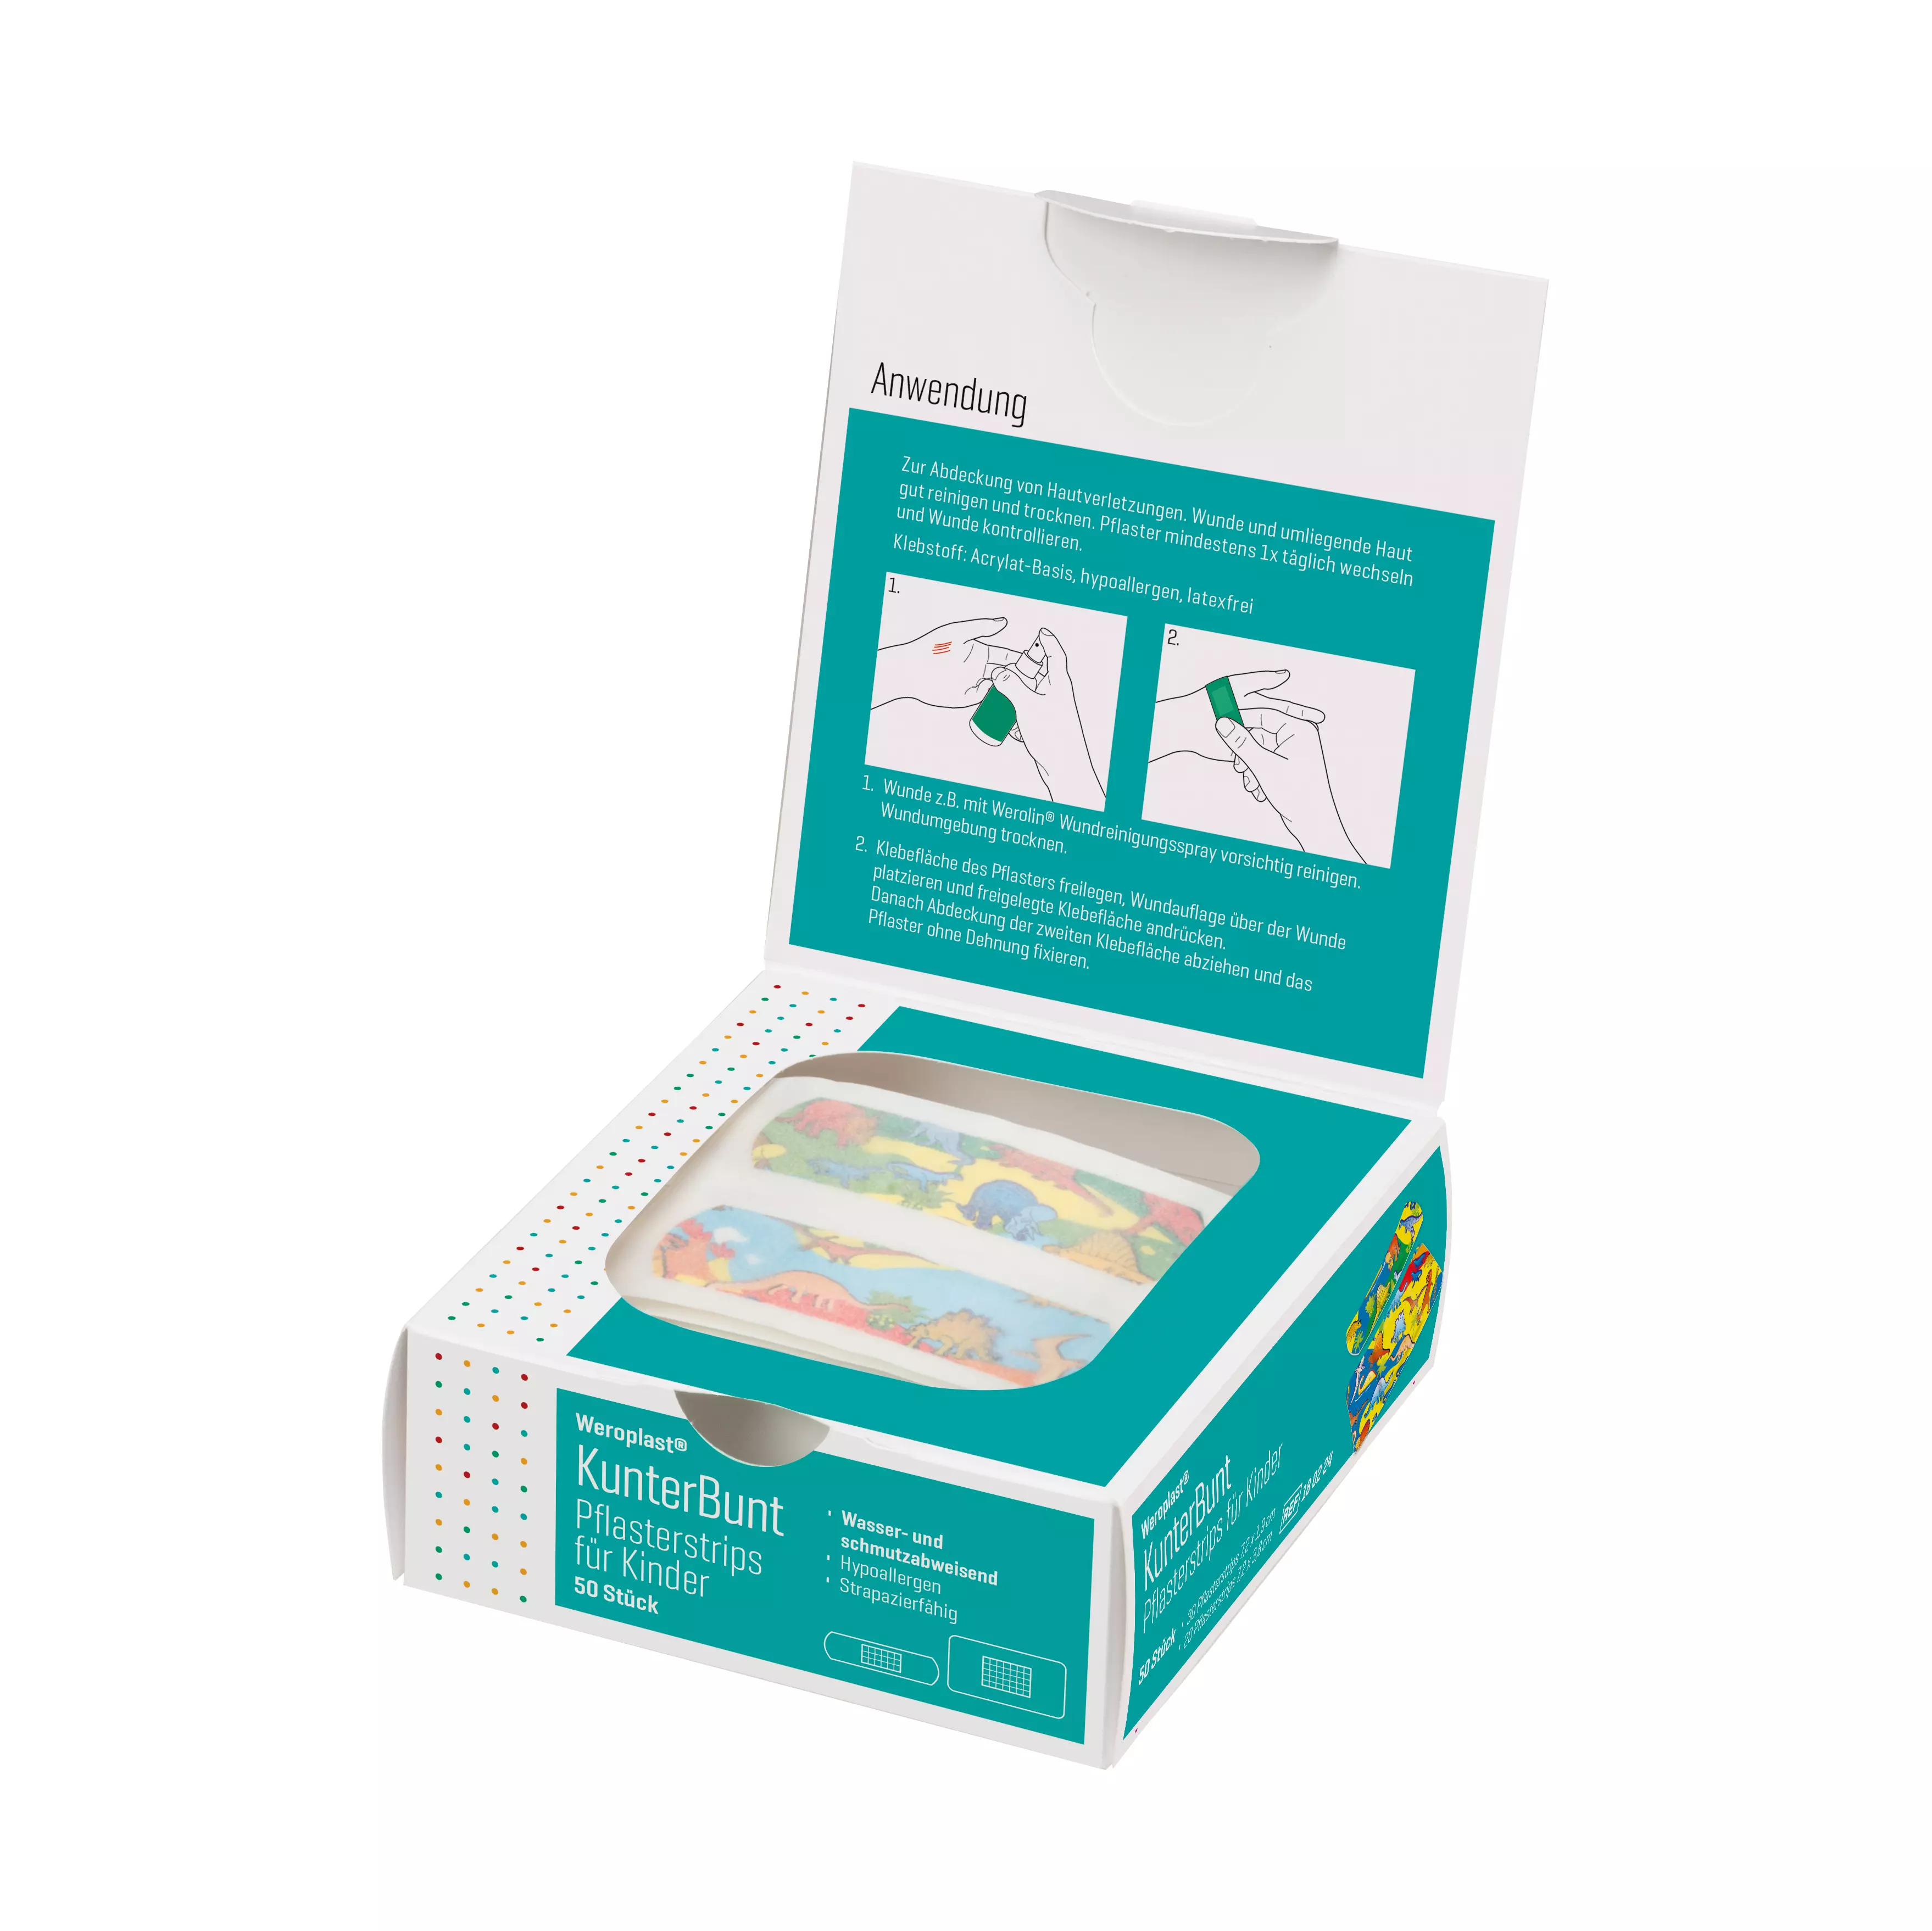 Weroplast® KunterBunt plaster strips mix for children, 50 pcs